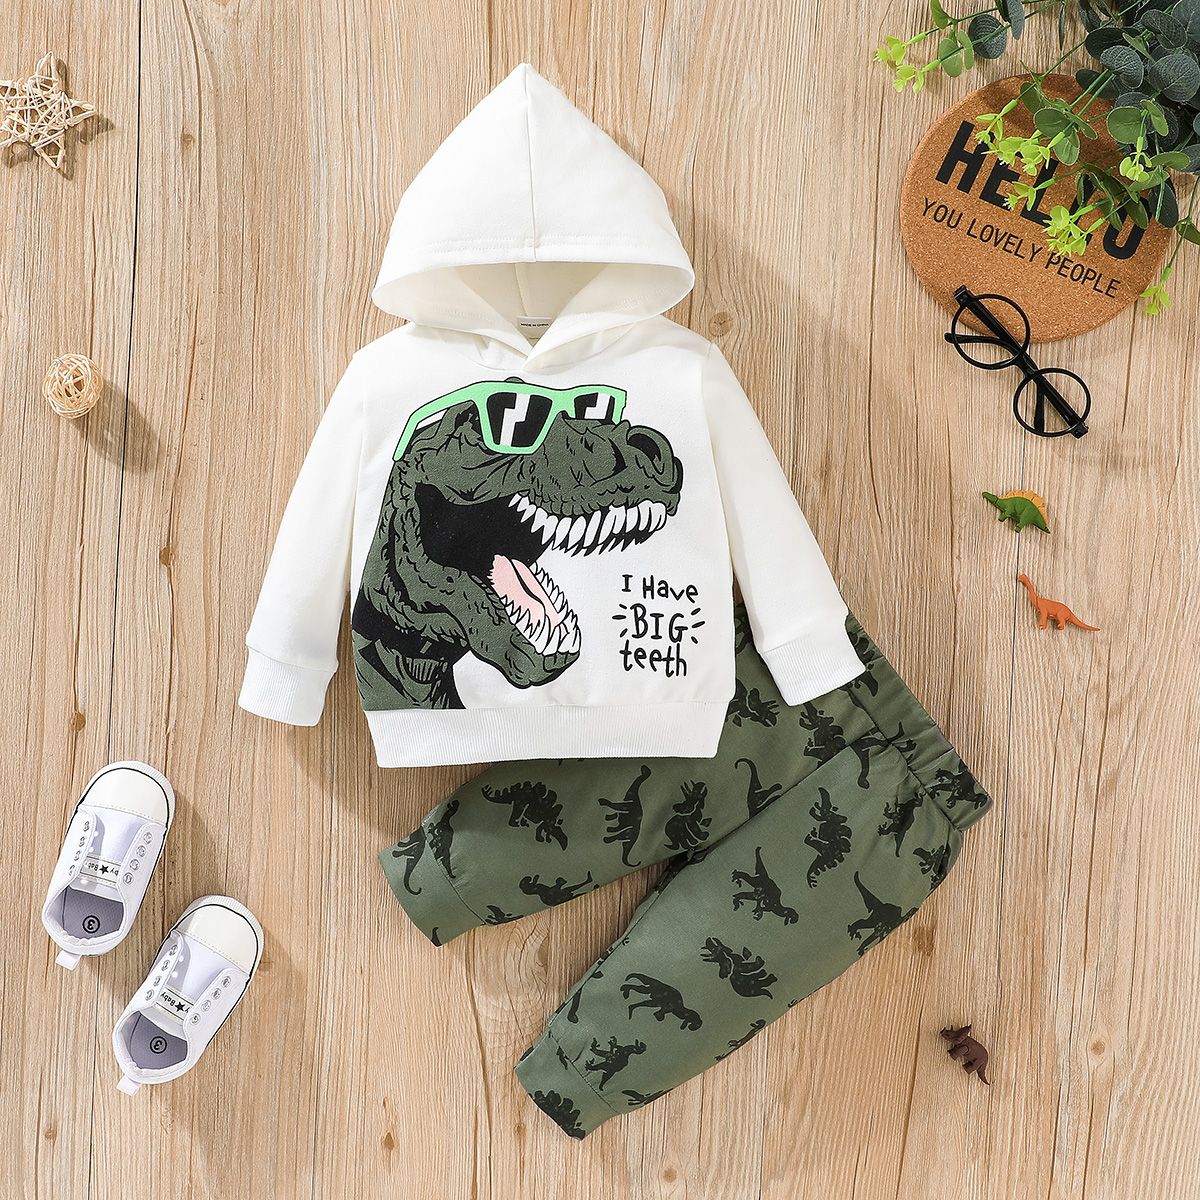 2pcs Toddler Boy Playful Dinosaur Print Hoodie Sweatshirt and Pants Set